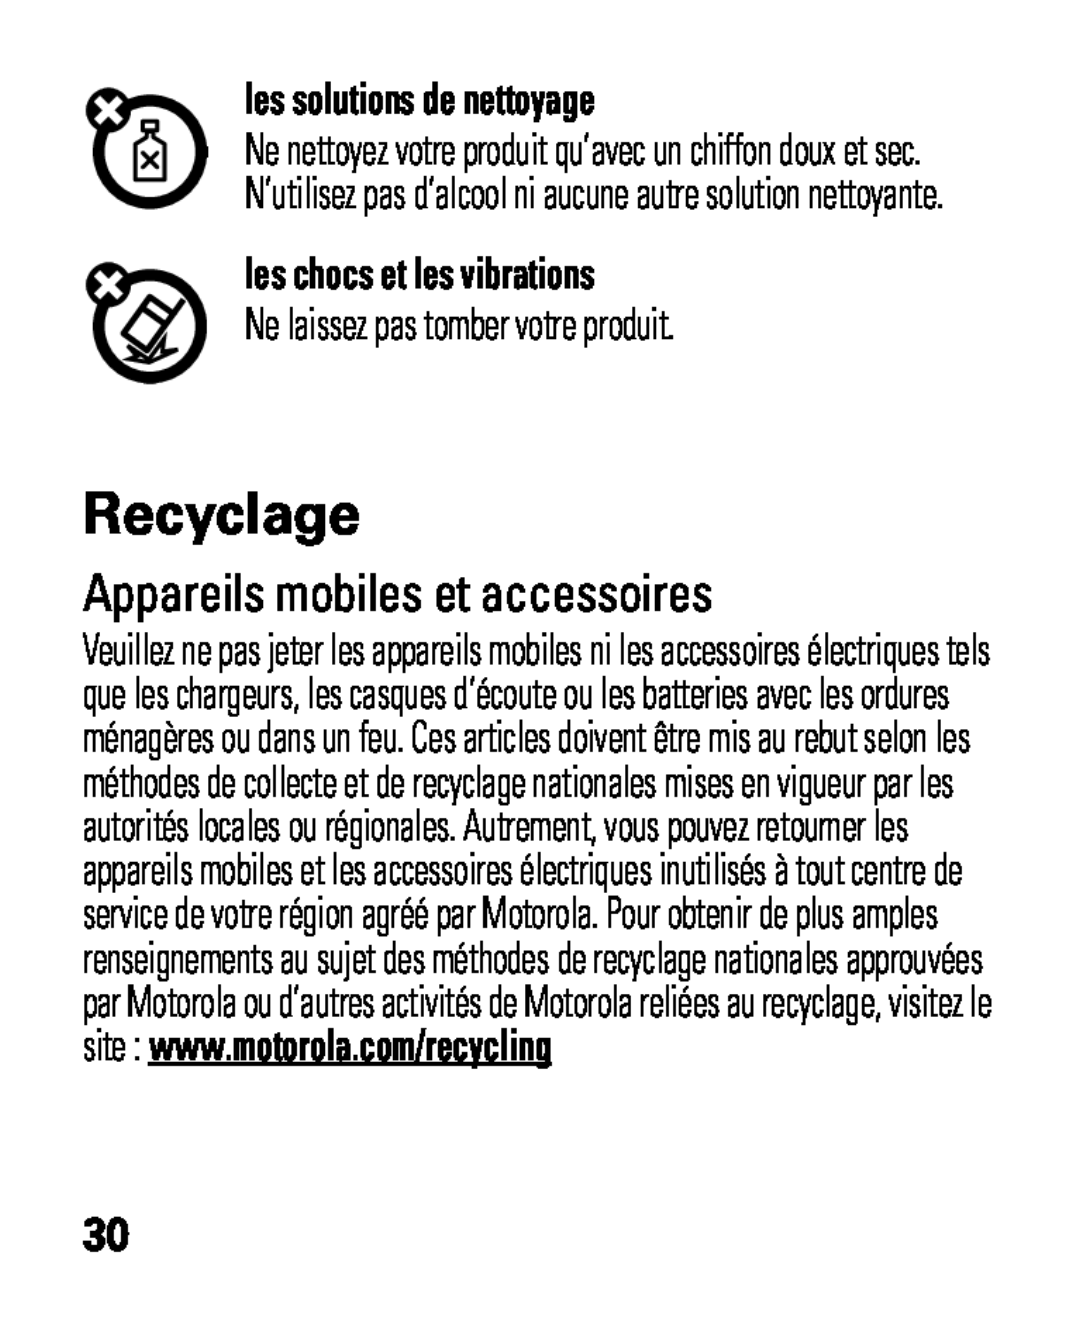 Motorola HK100 Recyclage, Appareils mobiles et accessoires, les solutions de nettoyage, les chocs et les vibrations 